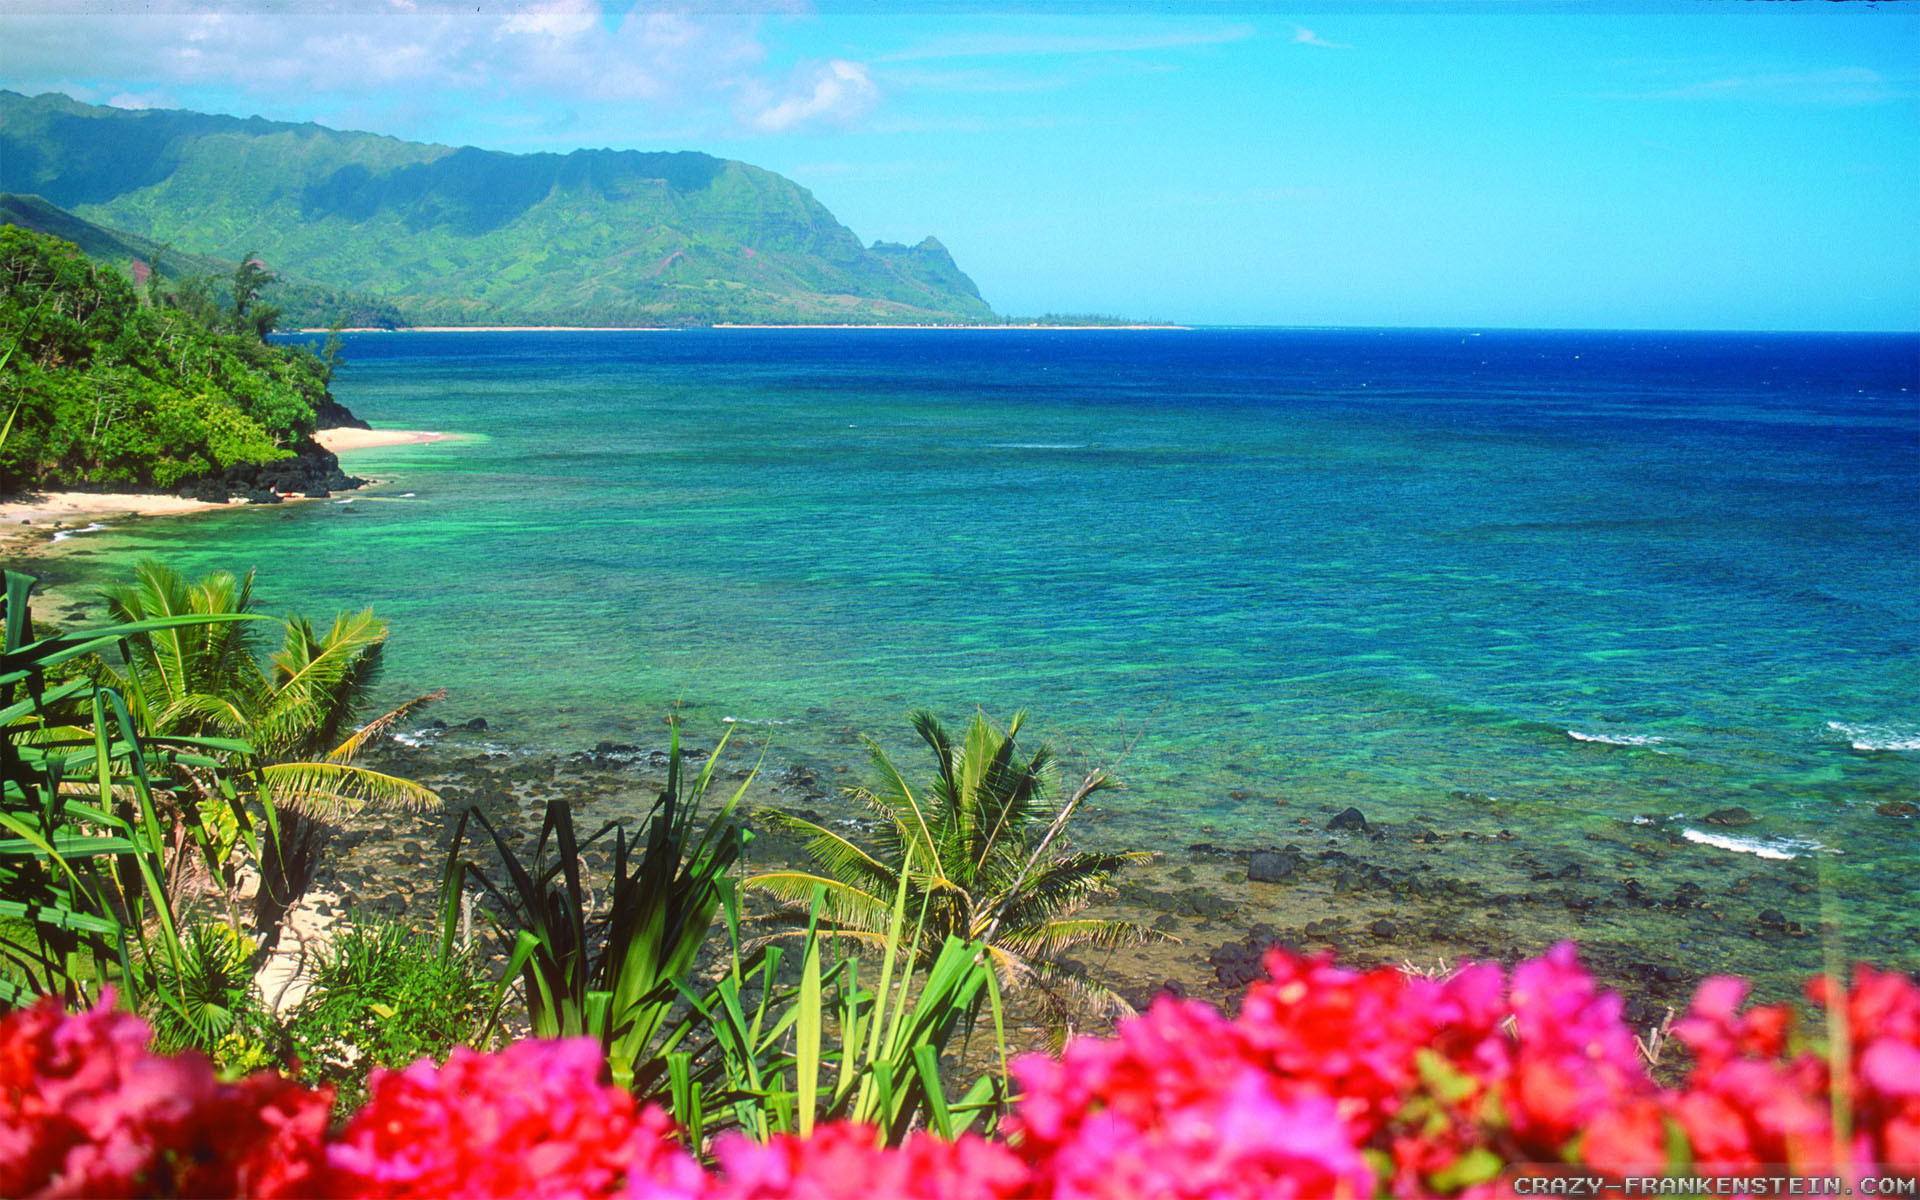 Hình nền Hawaii - Hãy tận hưởng vẻ đẹp tràn ngập của đảo Hawaii với hình nền này. Với các tầng tro xám của núi lửa, những bức tường đá vôi đáng ngạc nhiên, và những bãi biển trắng tinh khôi, bạn sẽ gần như cảm nhận được hơi thở đầy sức sống của thiên nhiên Hawaii trong khoảnh khắc đó.